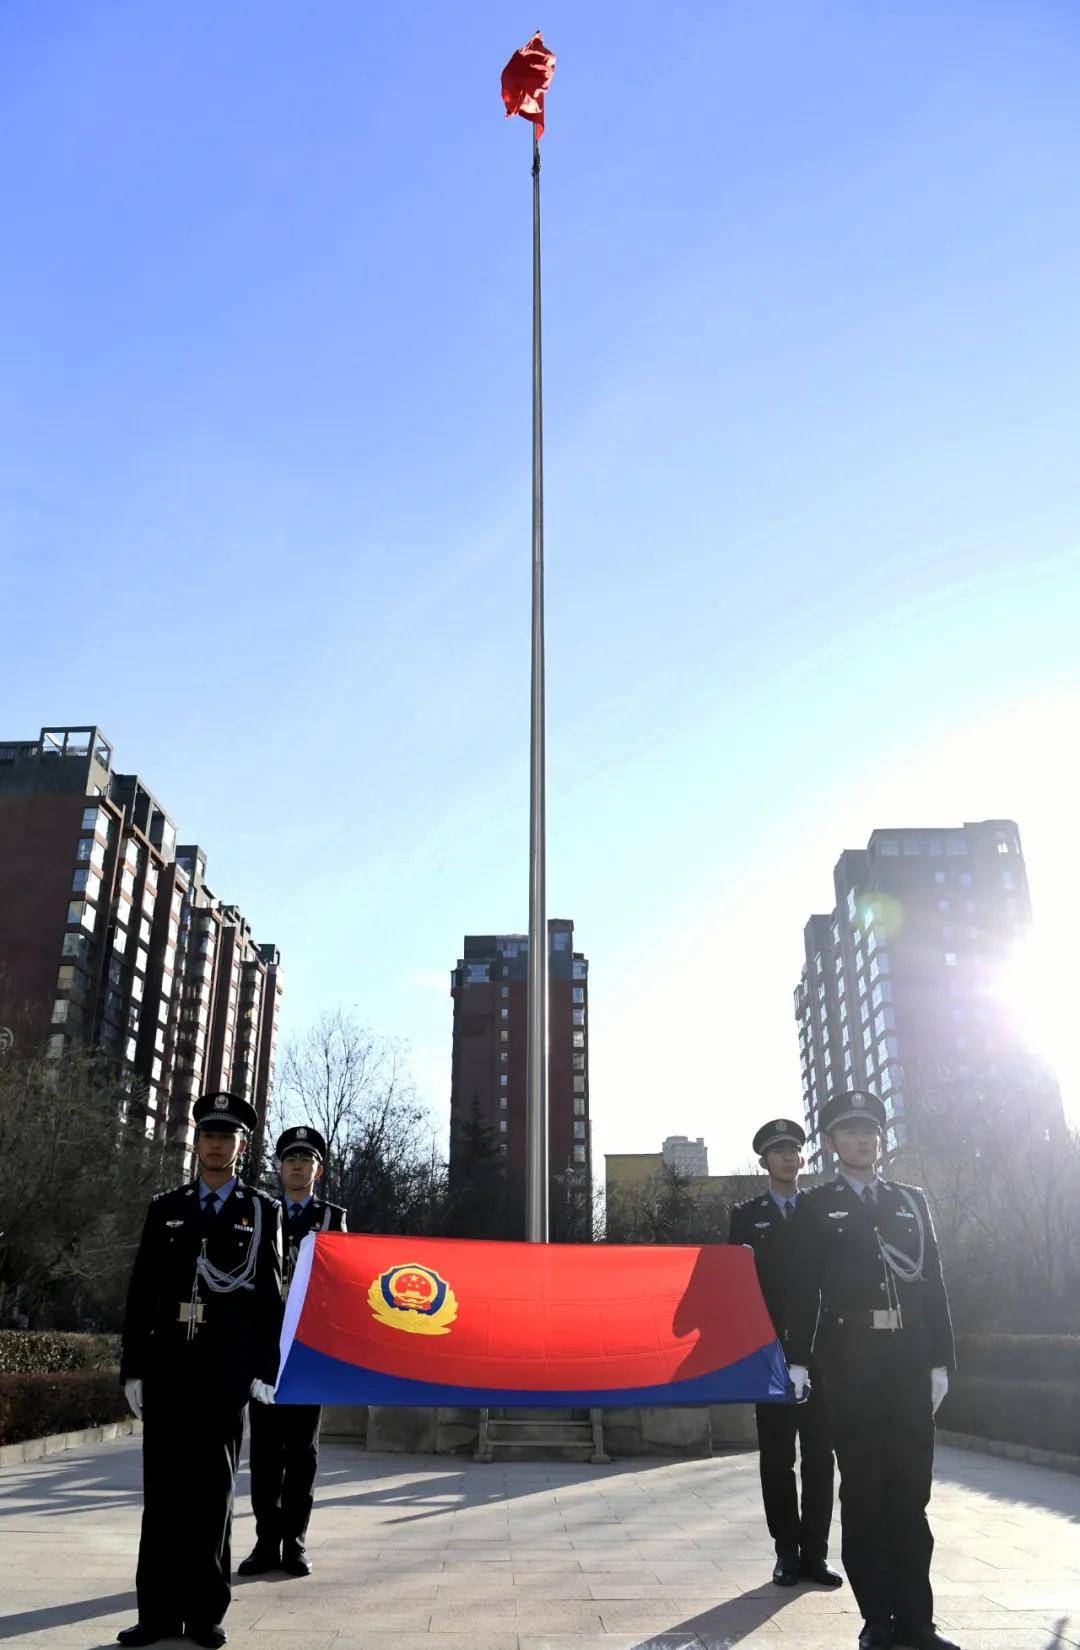 中国人民警察旗帜图片图片